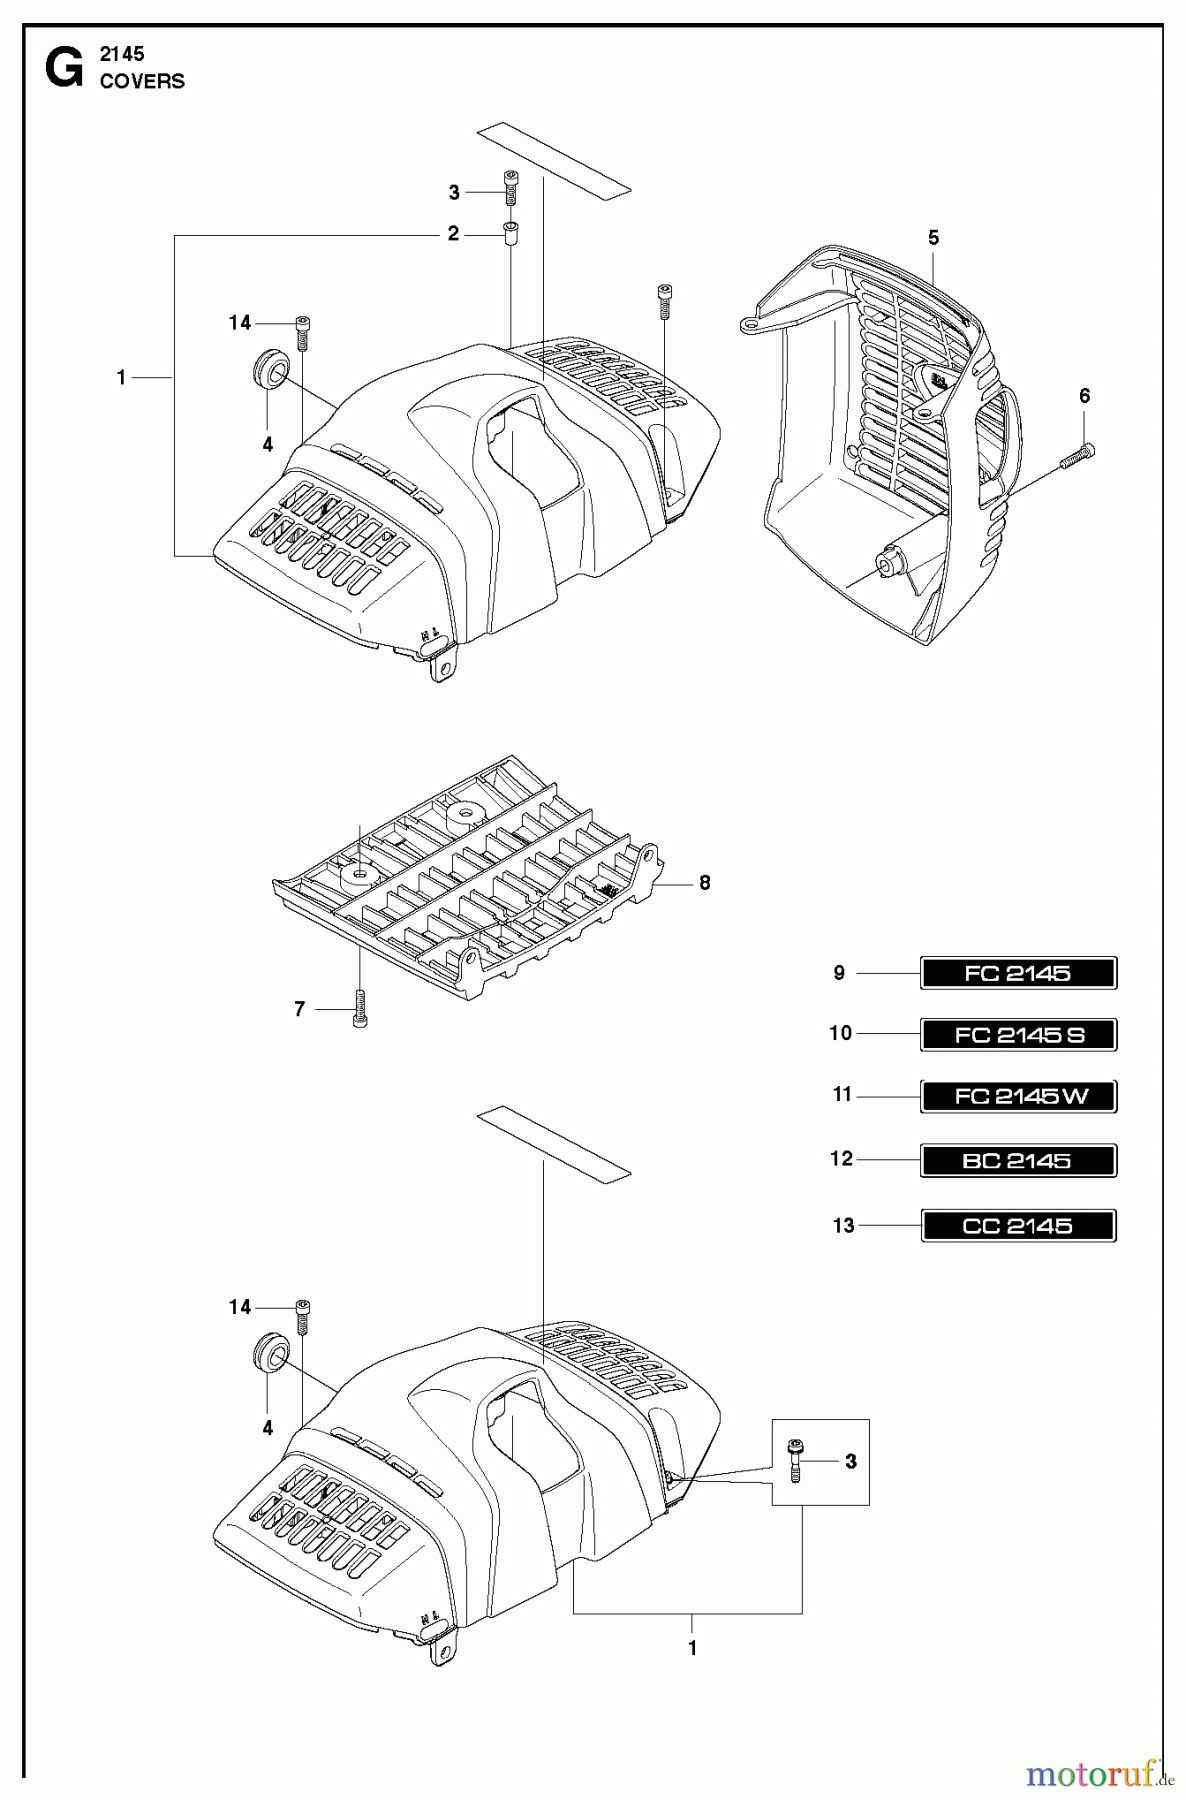  Jonsered Motorsensen, Trimmer BC2145 - Jonsered Brushcutter (2010-09) COVER